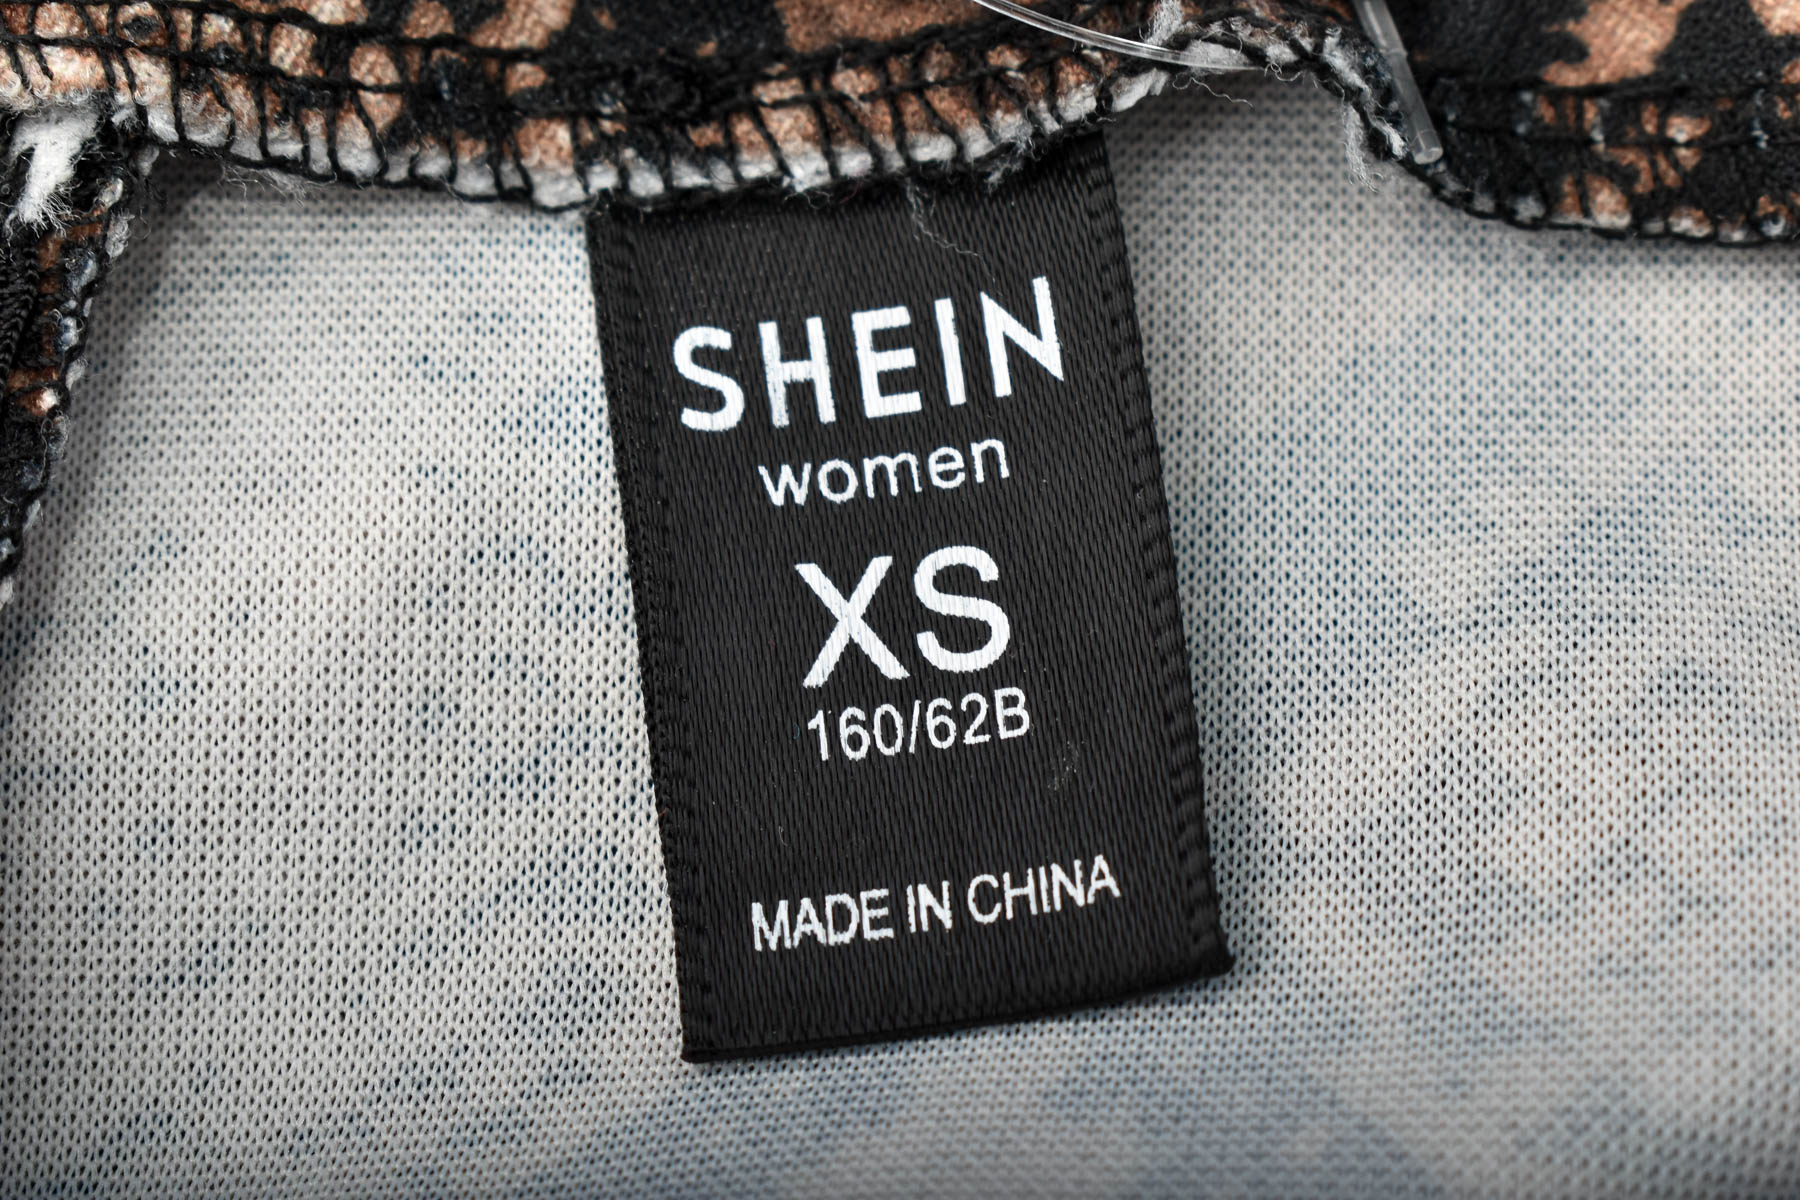 Spodnie spódnicowe - SHEIN - 2